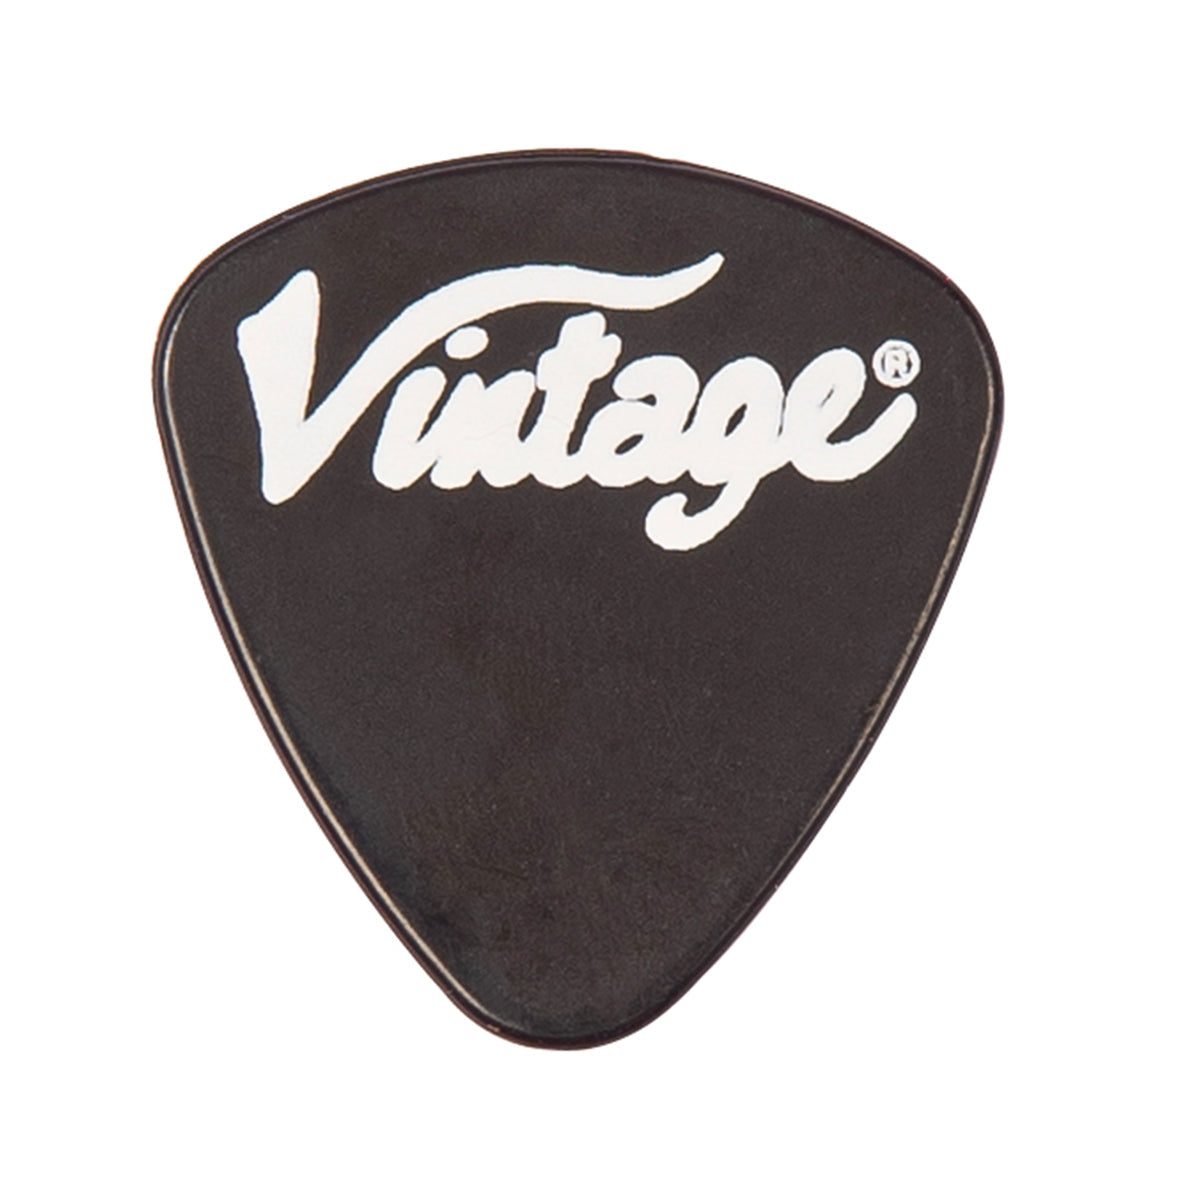 Vintage V20 Coaster Series Electric Guitar Pack ~ Boulevard Black, Electric Guitar for sale at Richards Guitars.